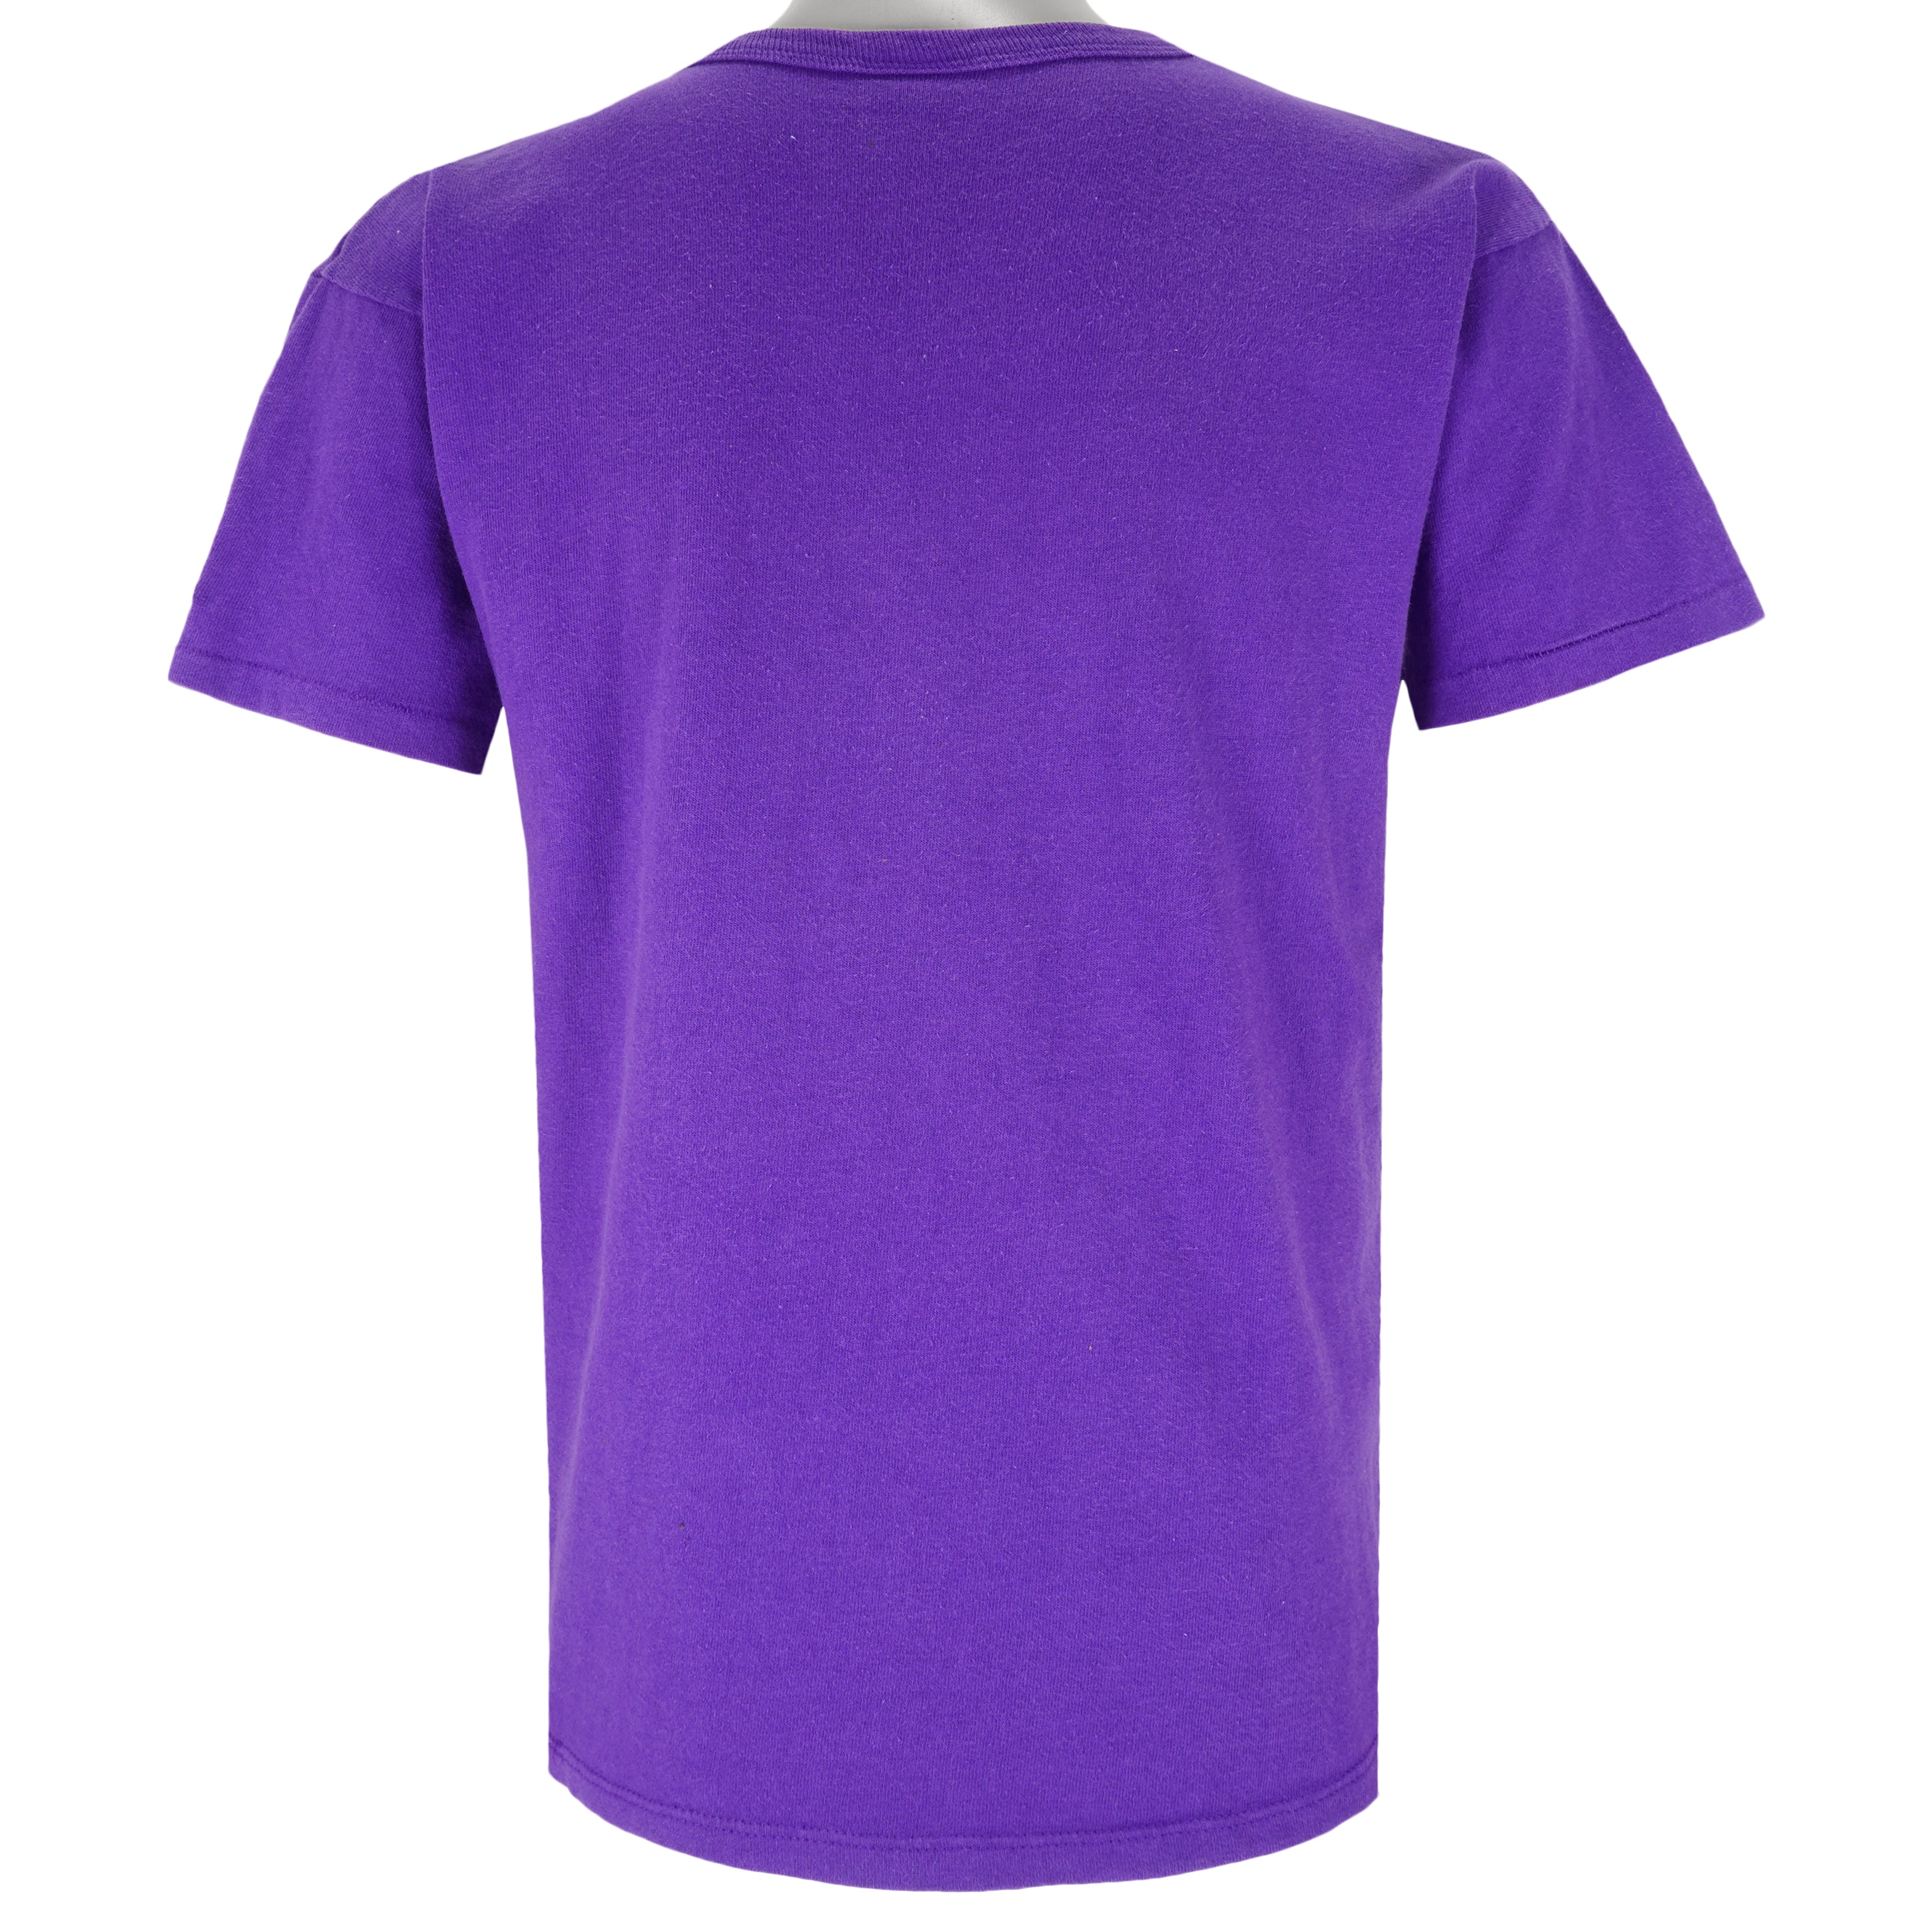 purple phoenix suns shirt